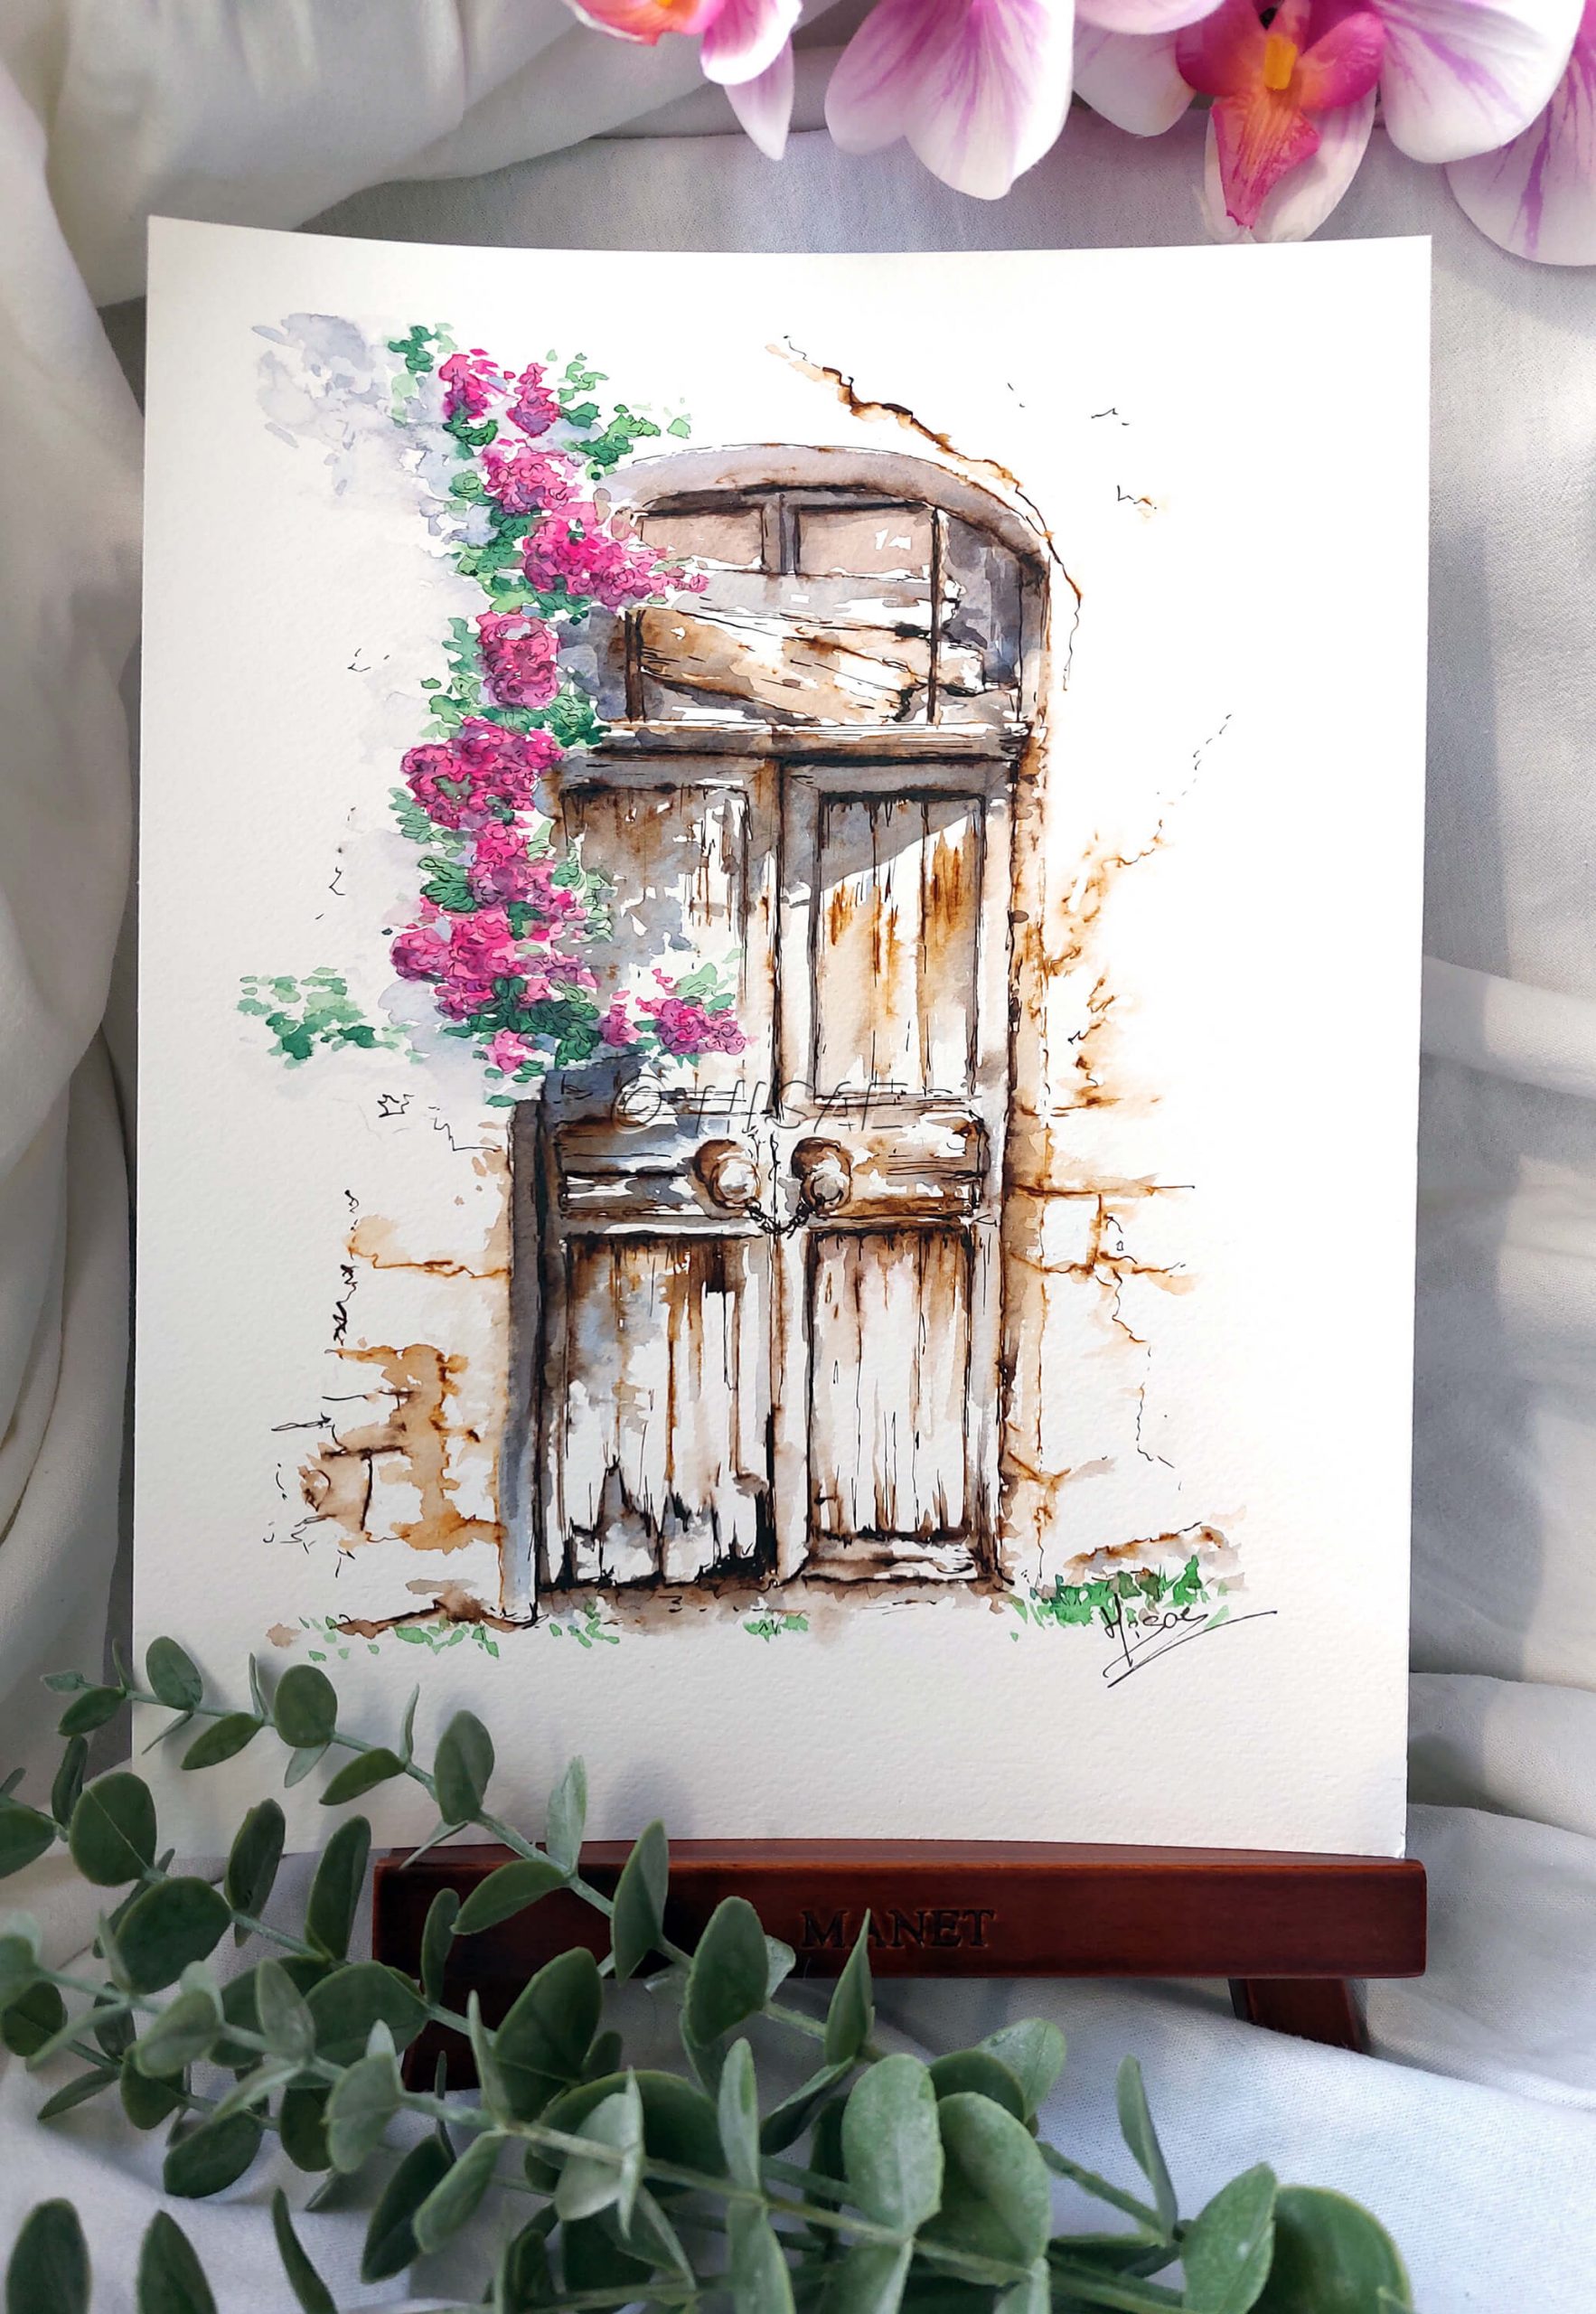 Dessin original réalisé à l'encre et à l'aquarelle, présenté sur chevalet, représentant une porte d'une maison abandonnée à côté de laquelle pend des fleurs grimpantes @Hisae illustrations